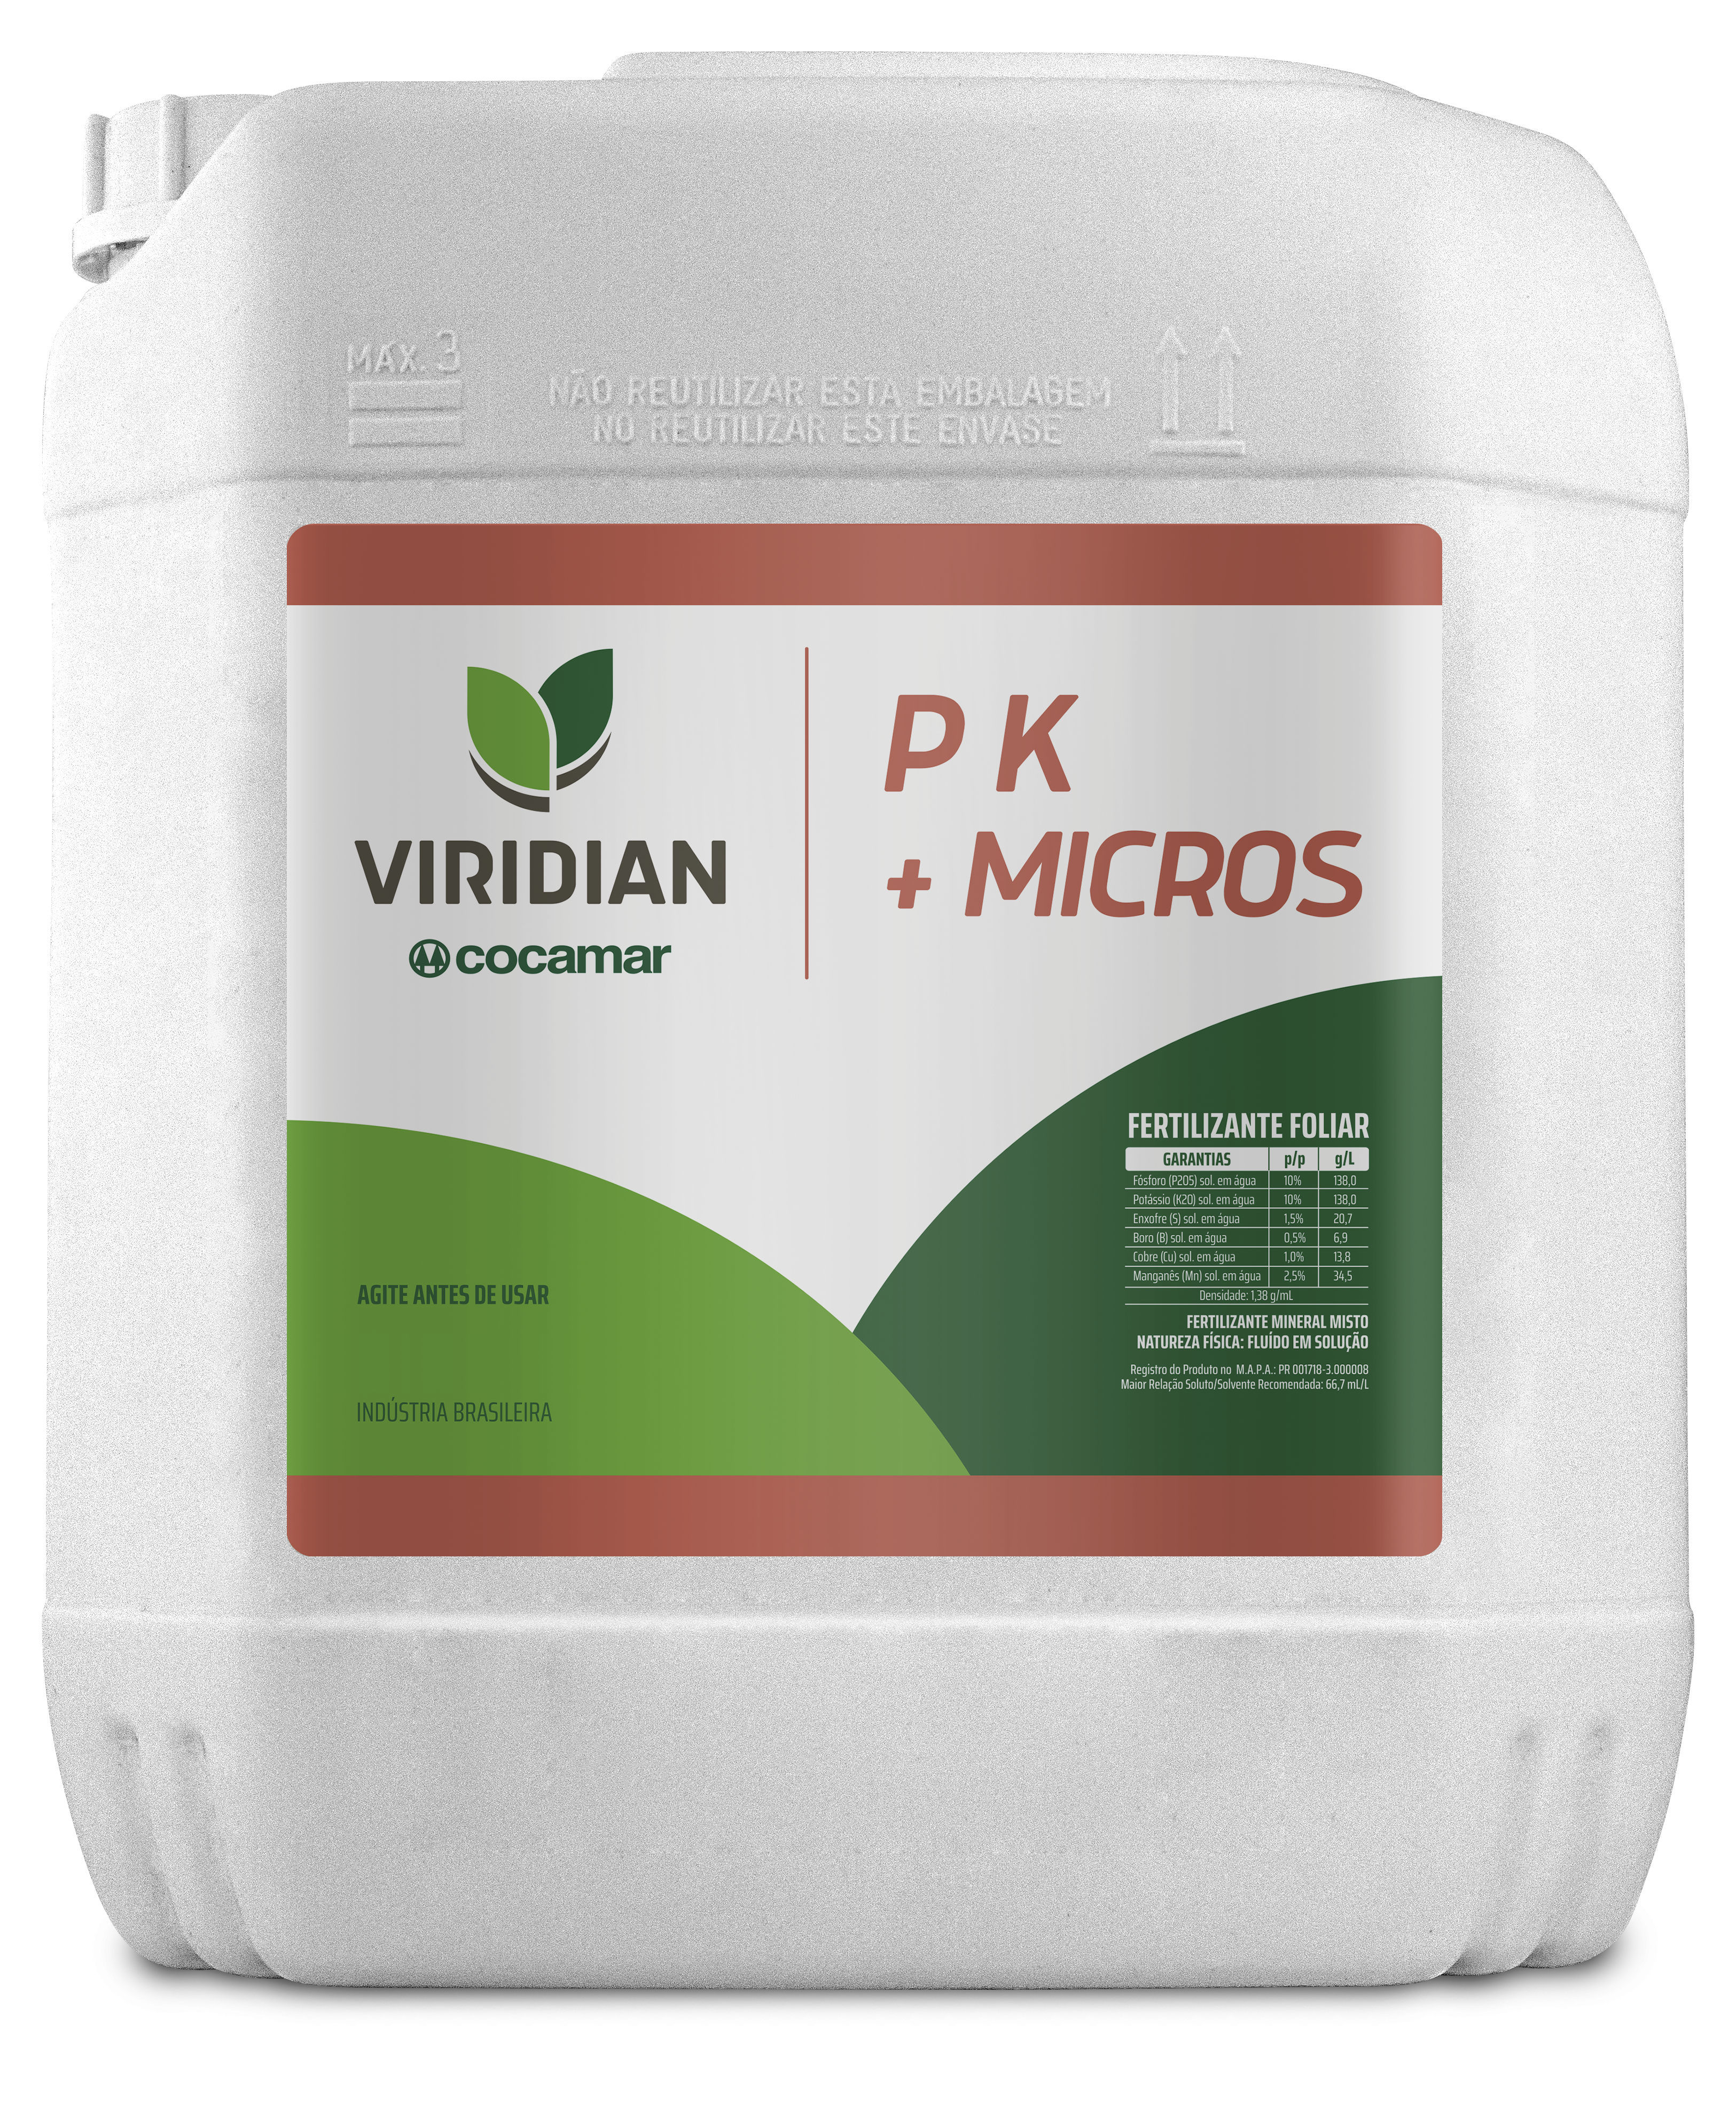 Imagem da Viridian PK + Micros